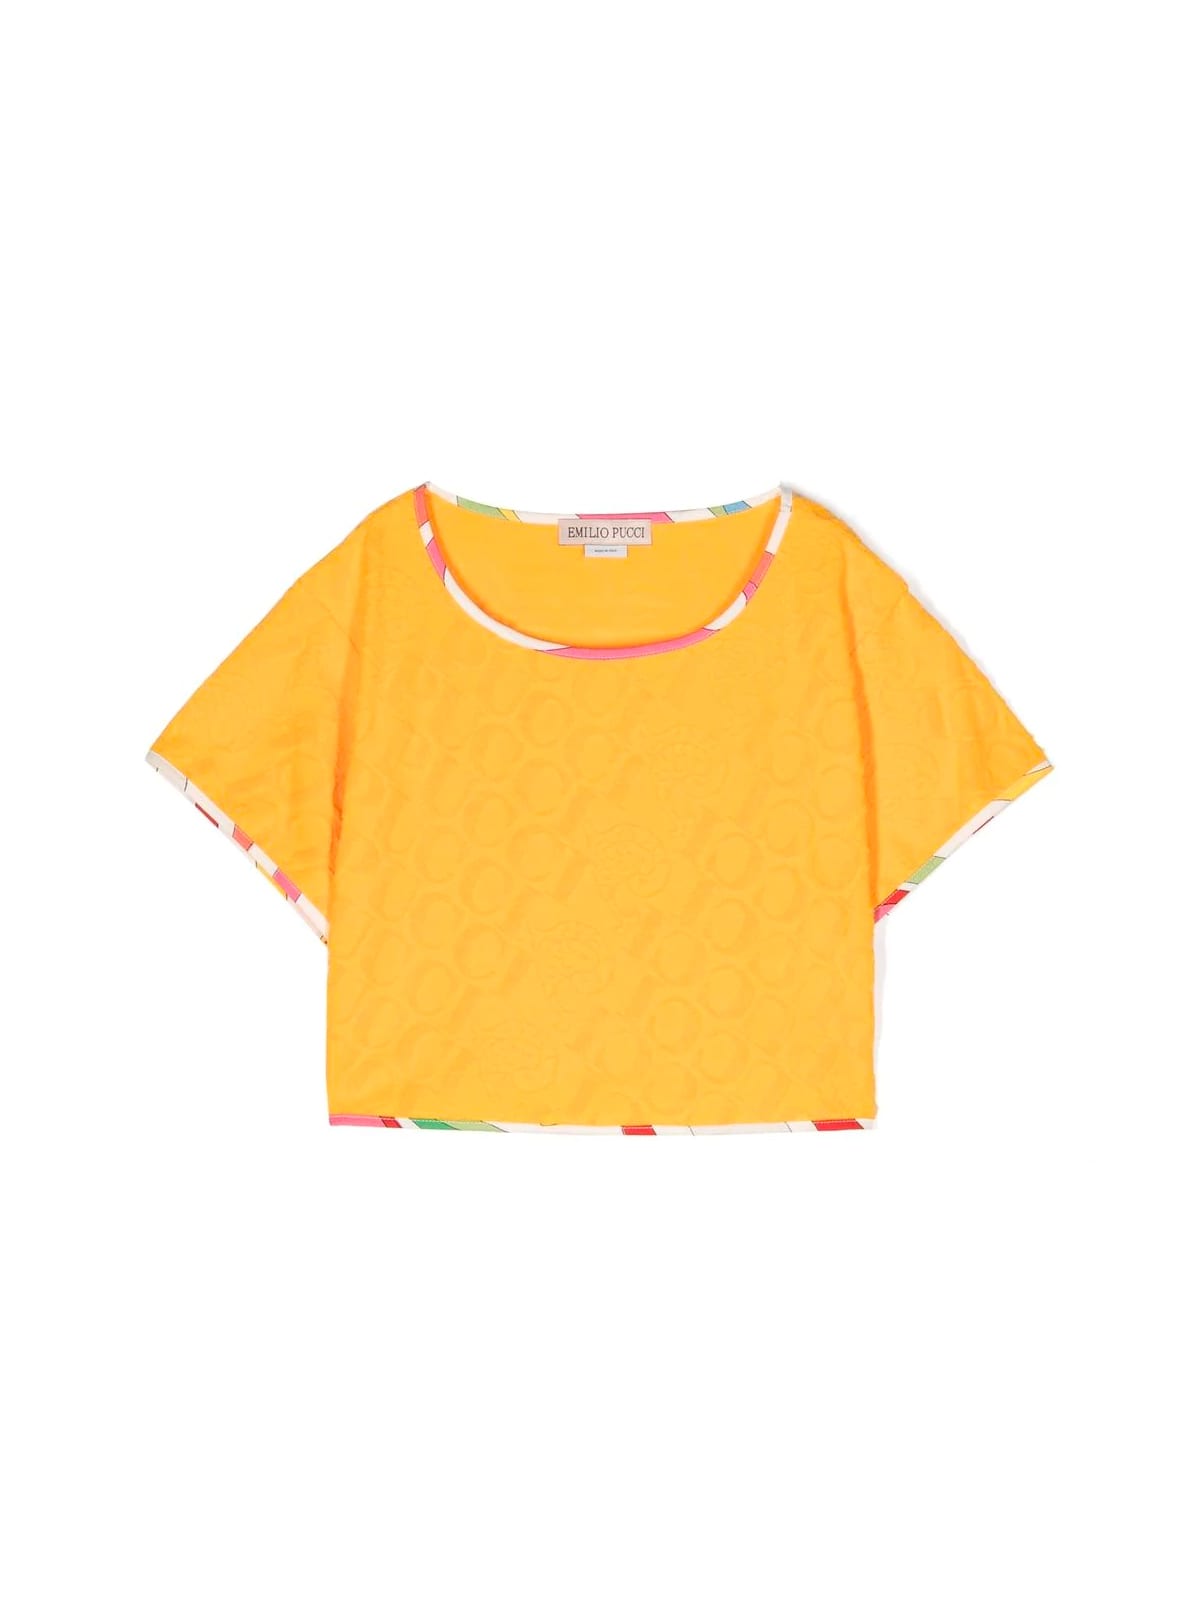 Emilio Pucci Kids' T-shirt In Mustard